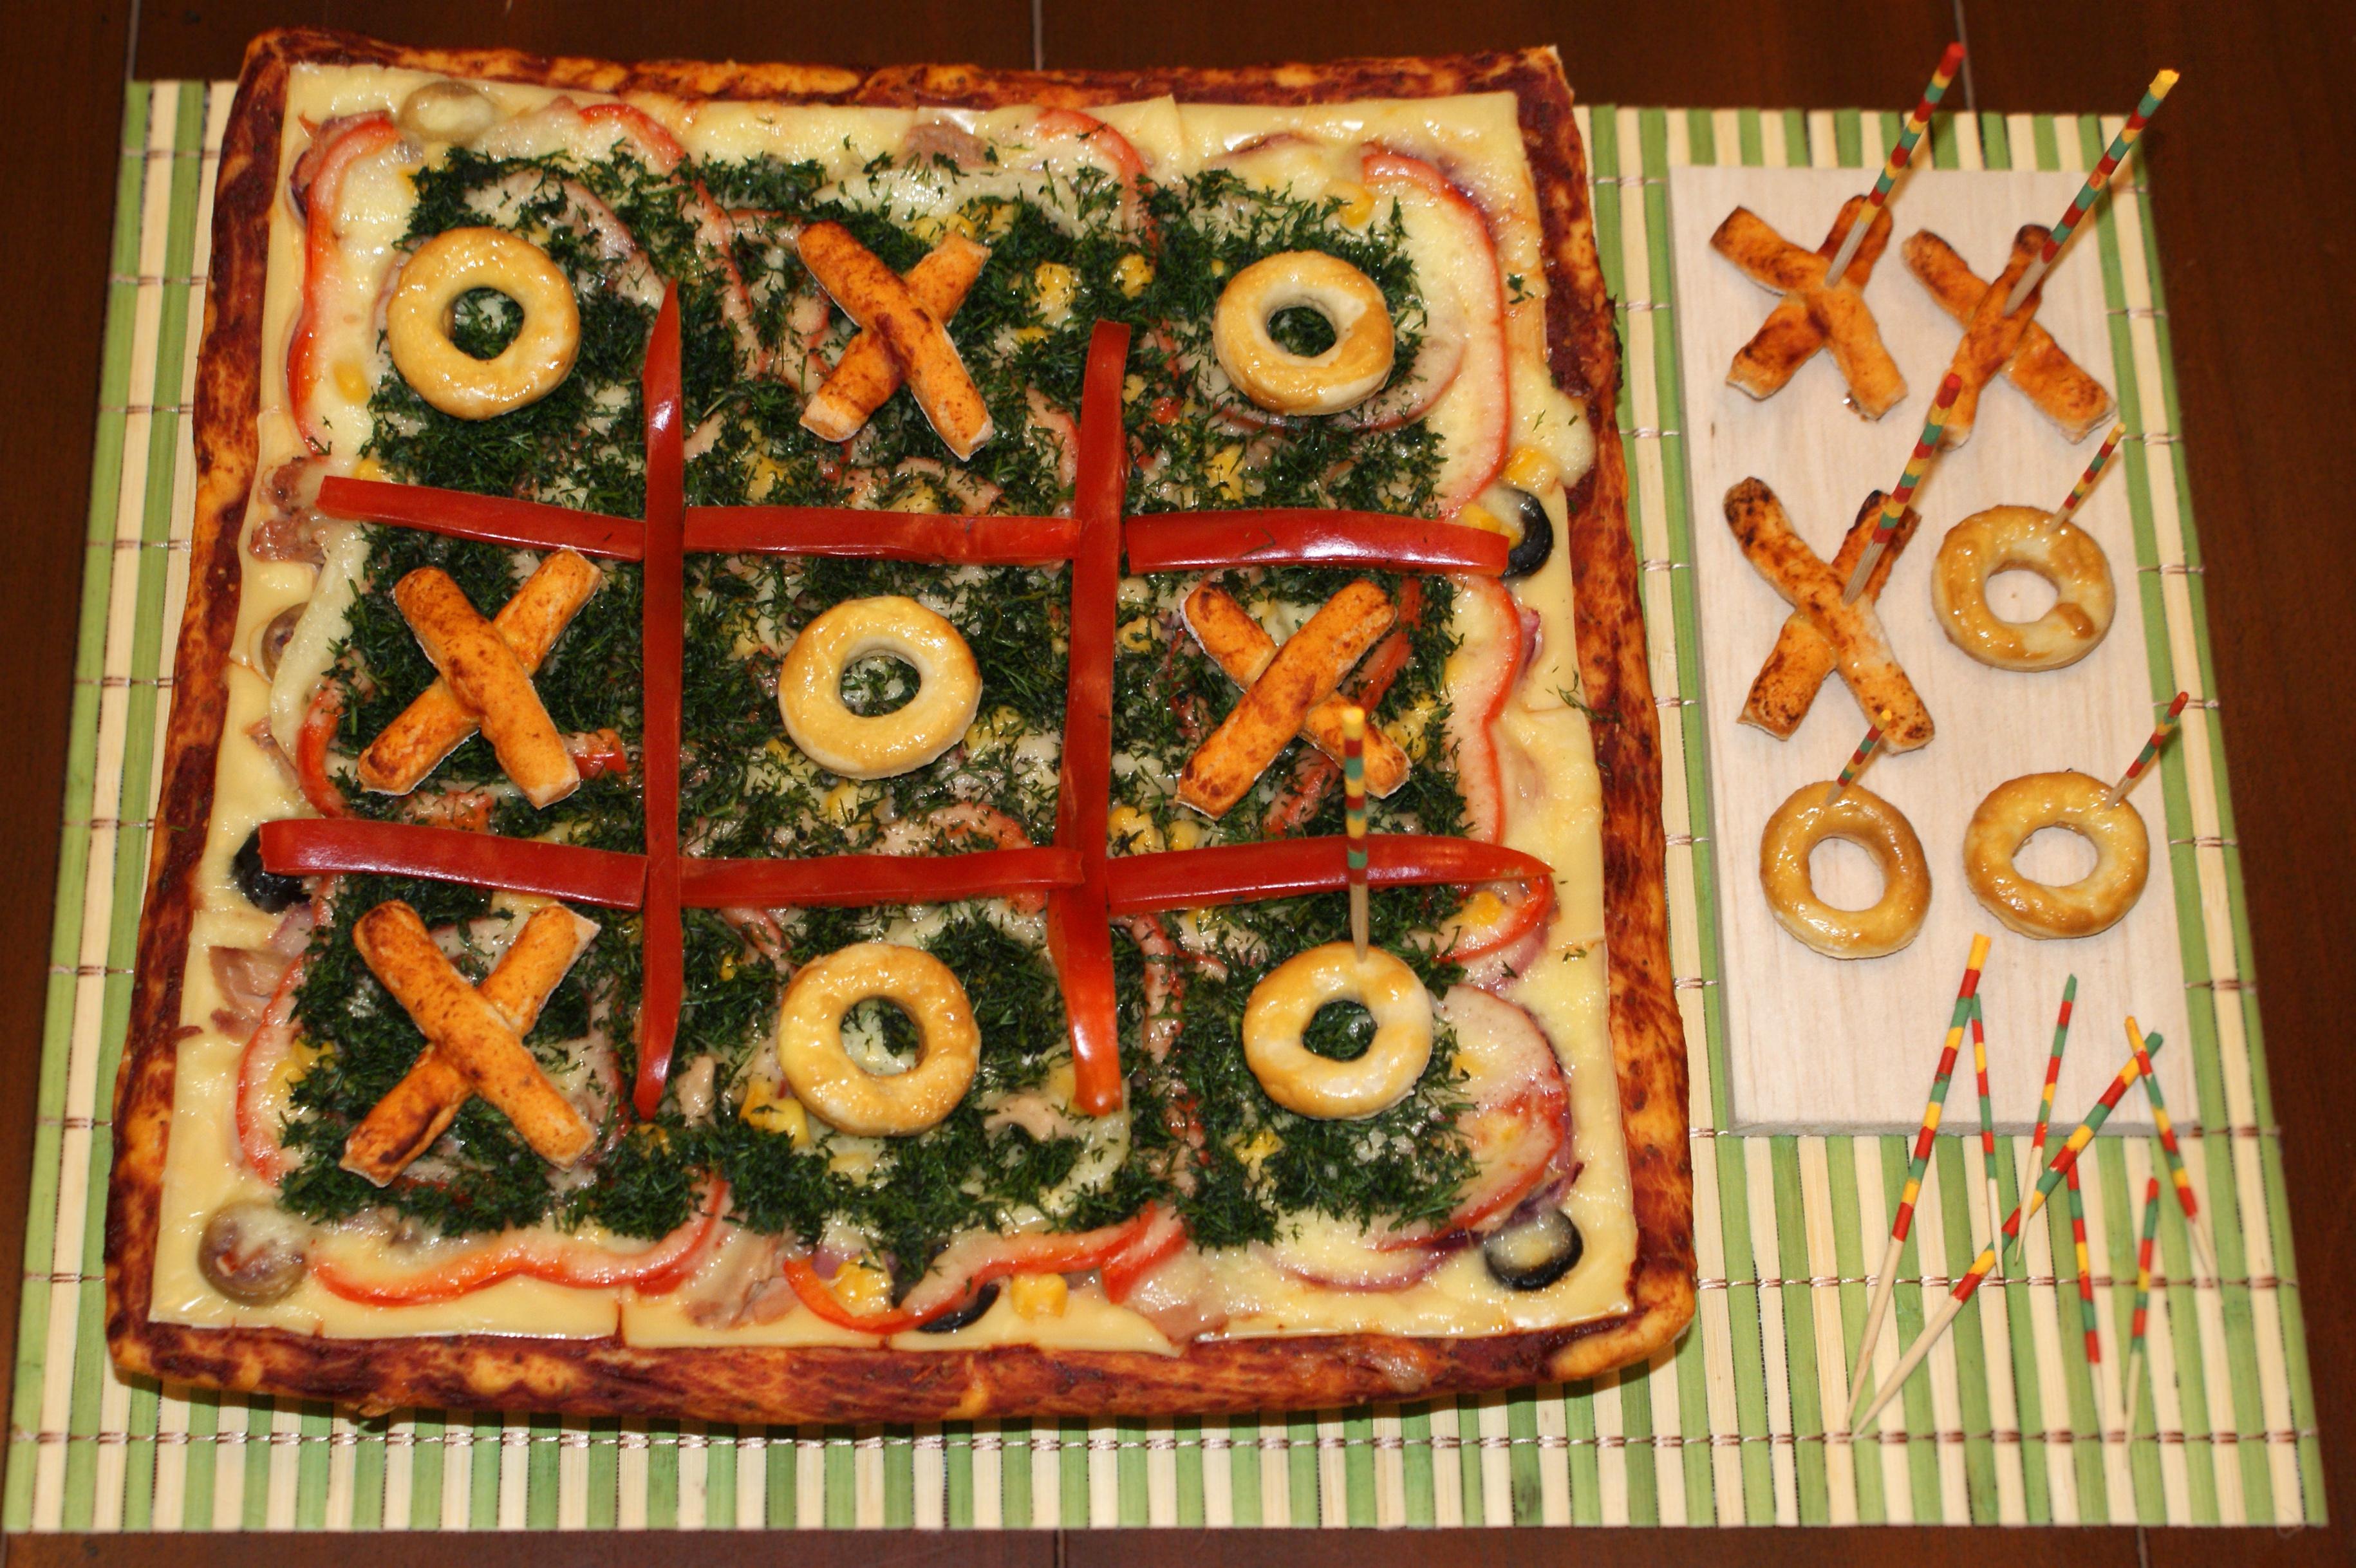  1-pizza-interactiva-pt-copiii-mofturosi